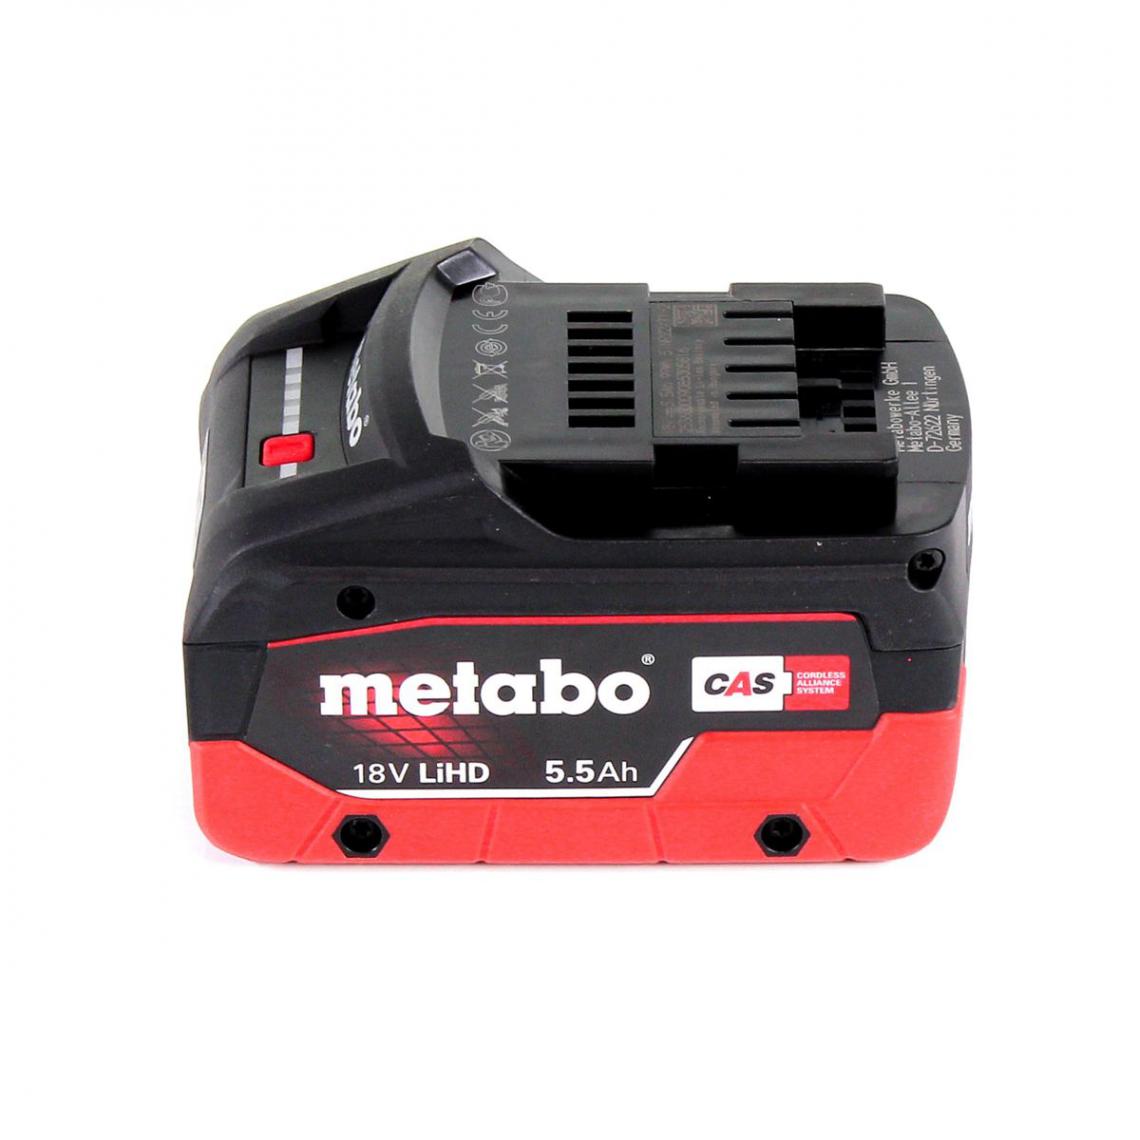 Metabo - Metabo STA 18 LTX 100 Scie sauteuse sans fil 18V ( 601002840 ) + 1x Batterie 5,5Ah + Coffret de transport - sans chargeur - Scies sauteuses